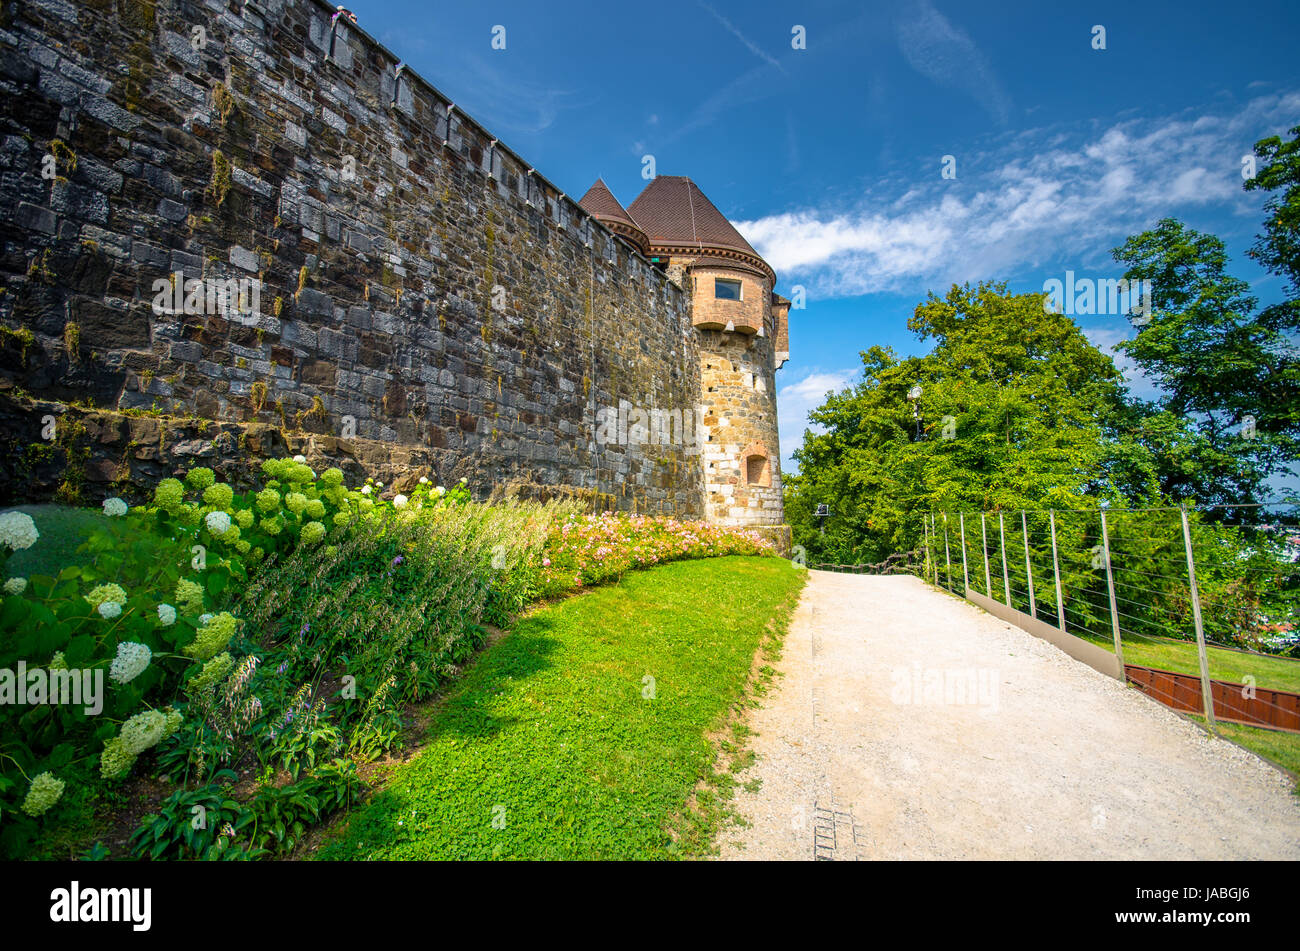 Ljubljana castle - Ljubljanski grad, Slovenia, Europe. Stock Photo